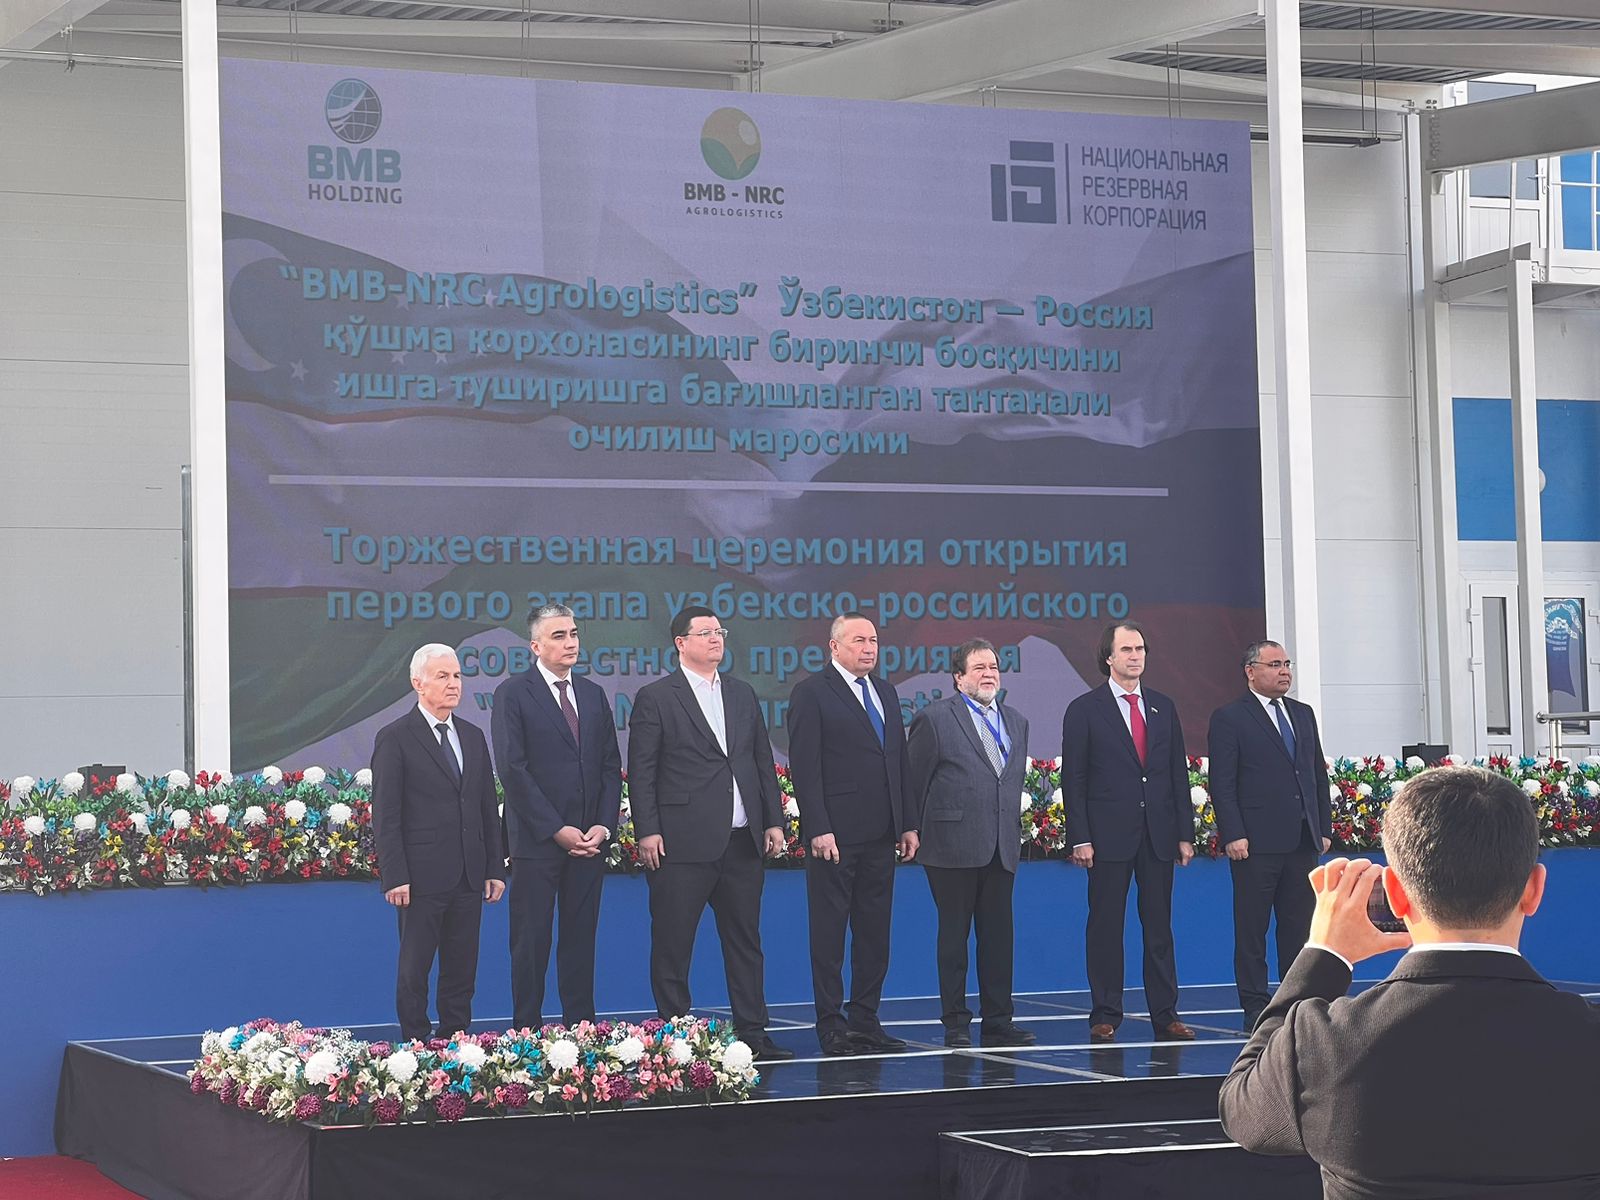 Агрологистический комплекс открыли в Узбекистане 